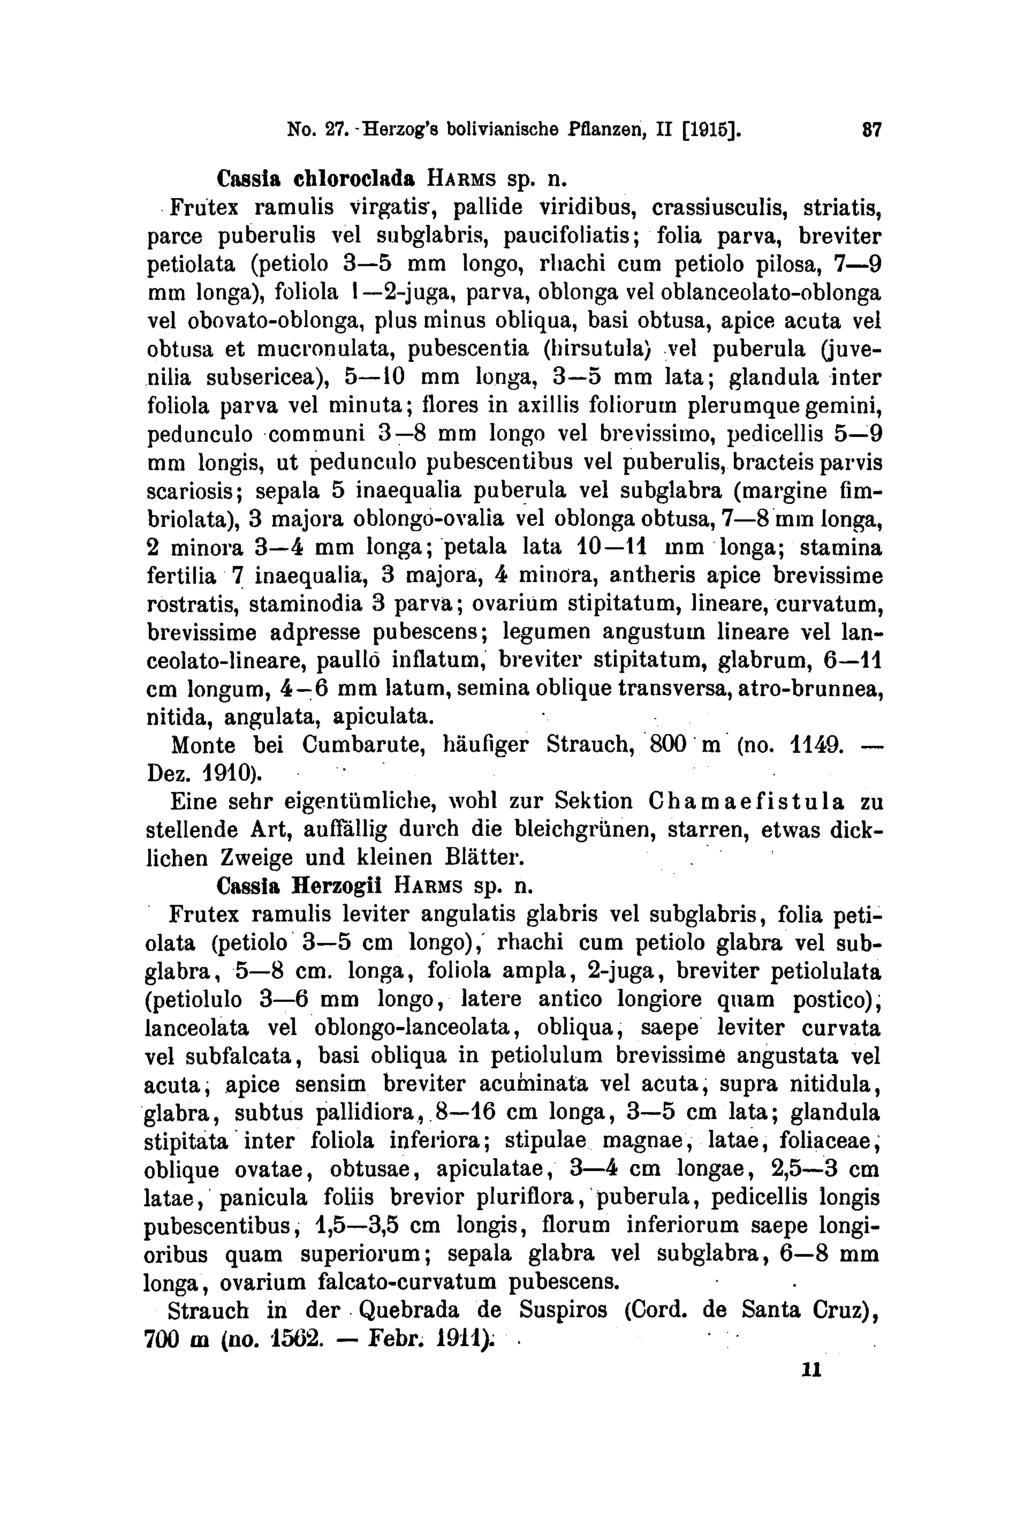 Febr. 11 No. 27. Herzog's bolivianische Pflanzen, II [1915]. 37 Cassia chloroclada HARMS sp. n.